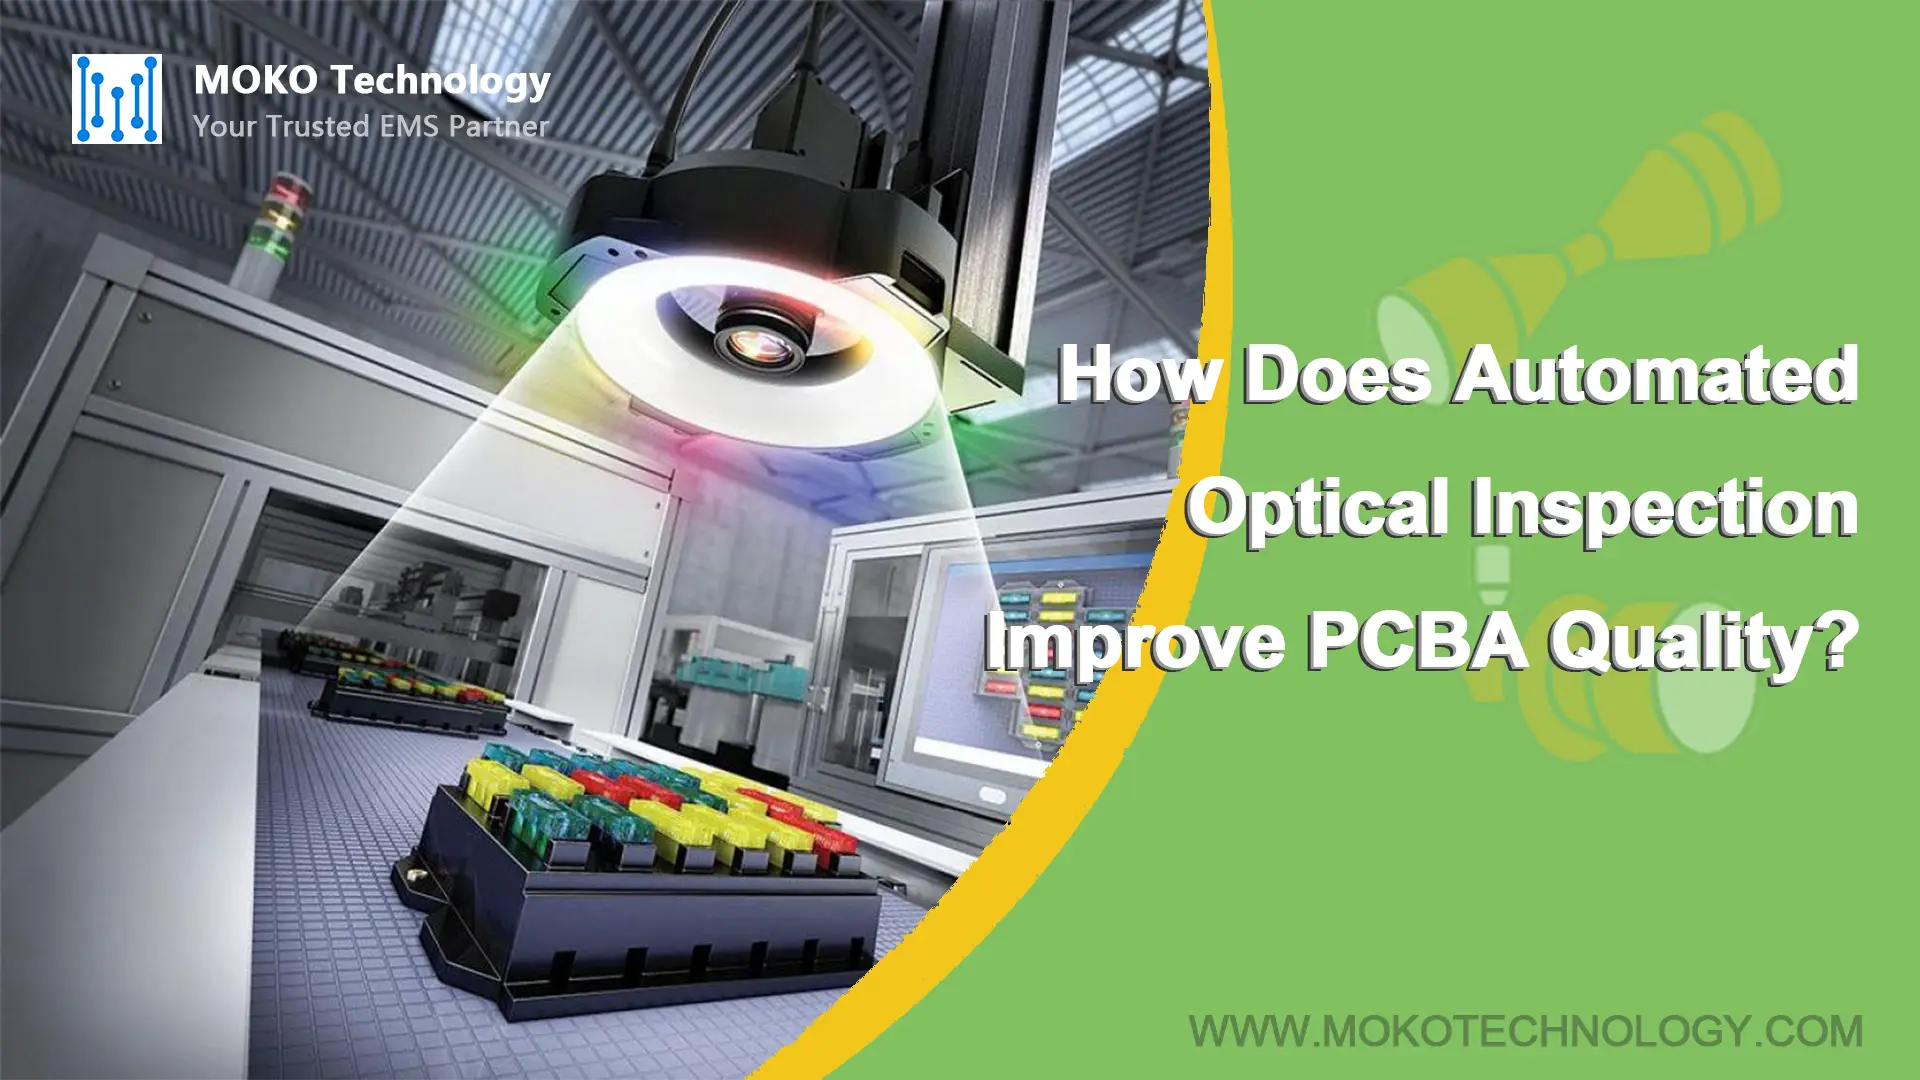 Como a inspeção óptica automatizada melhora a qualidade do PCBA